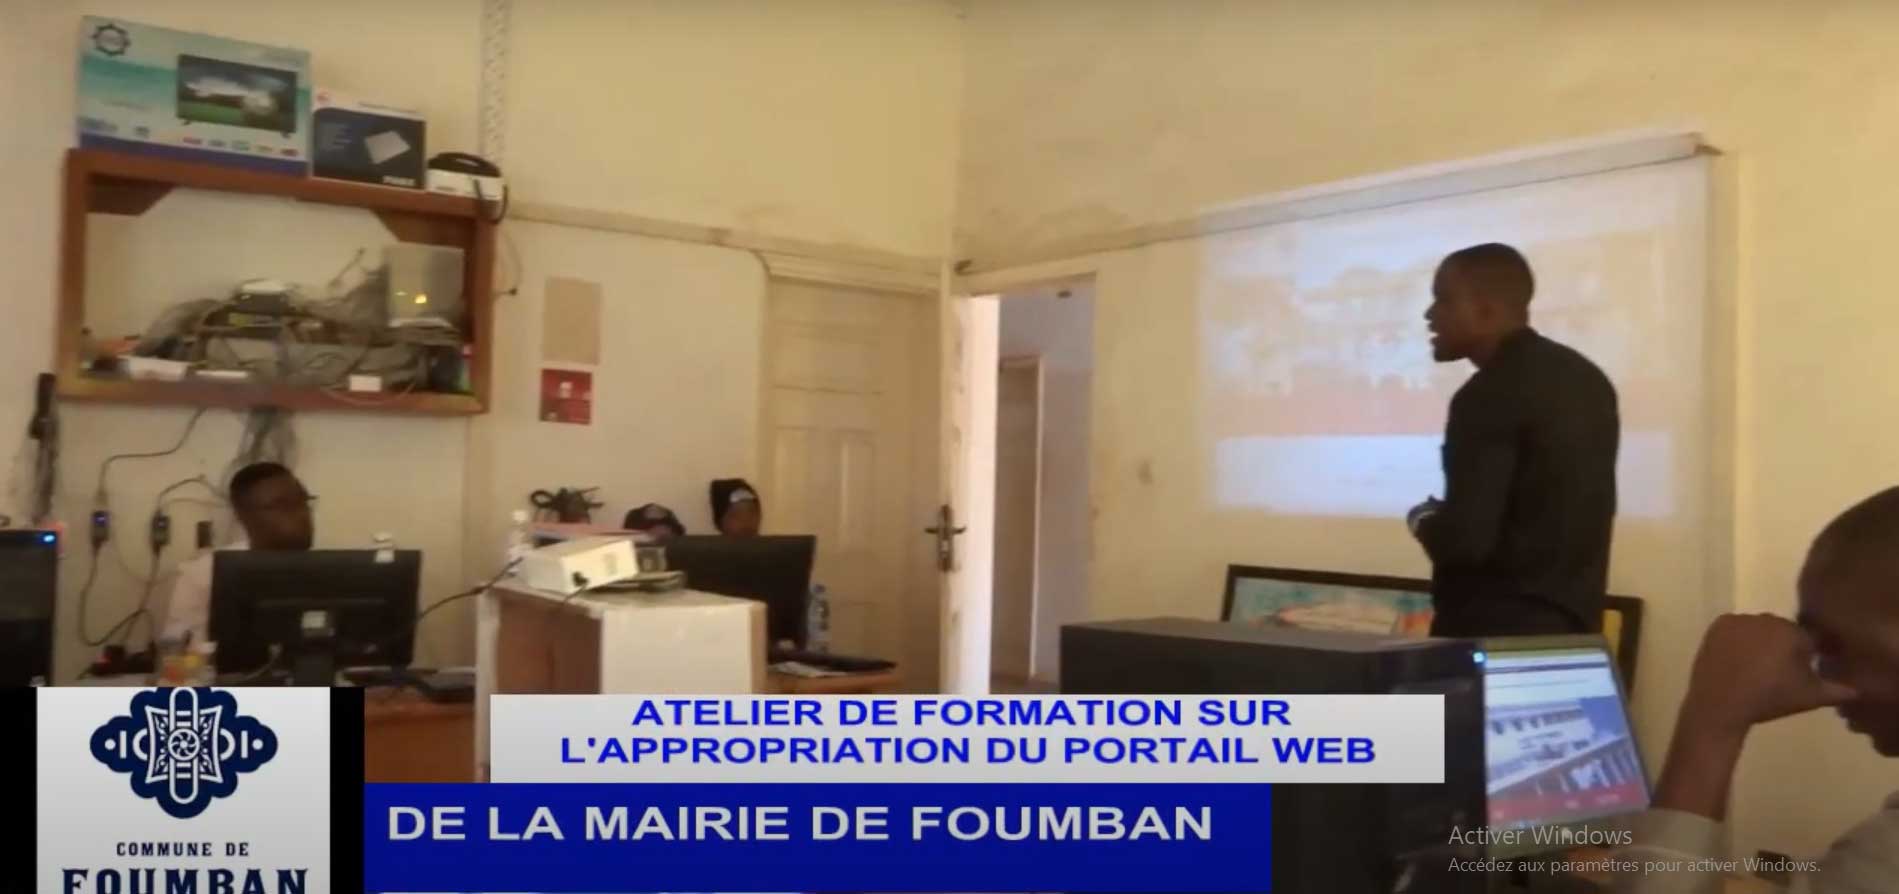 Atelier de Formation sur l’appropriation du Portail Web de la Mairie de Foumban